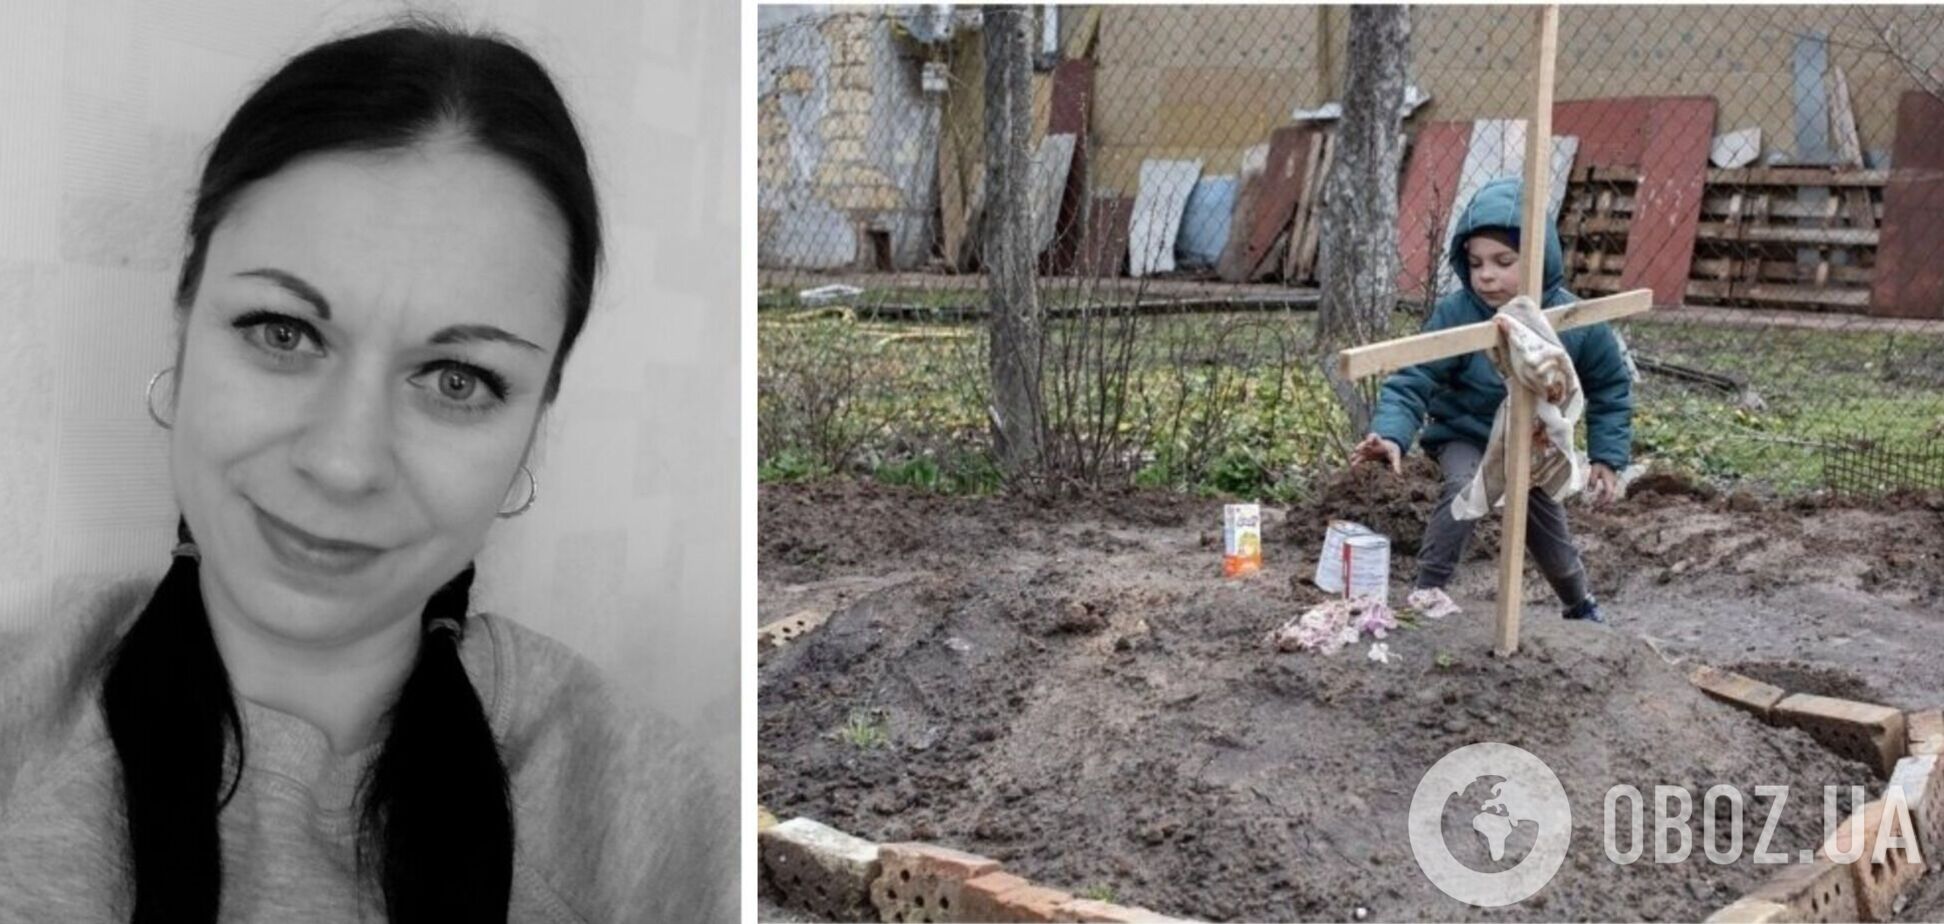 Мама мальчика из Бучи, фото которого на ее могиле потрясло мир, была няней в детском саду: детали трагедии